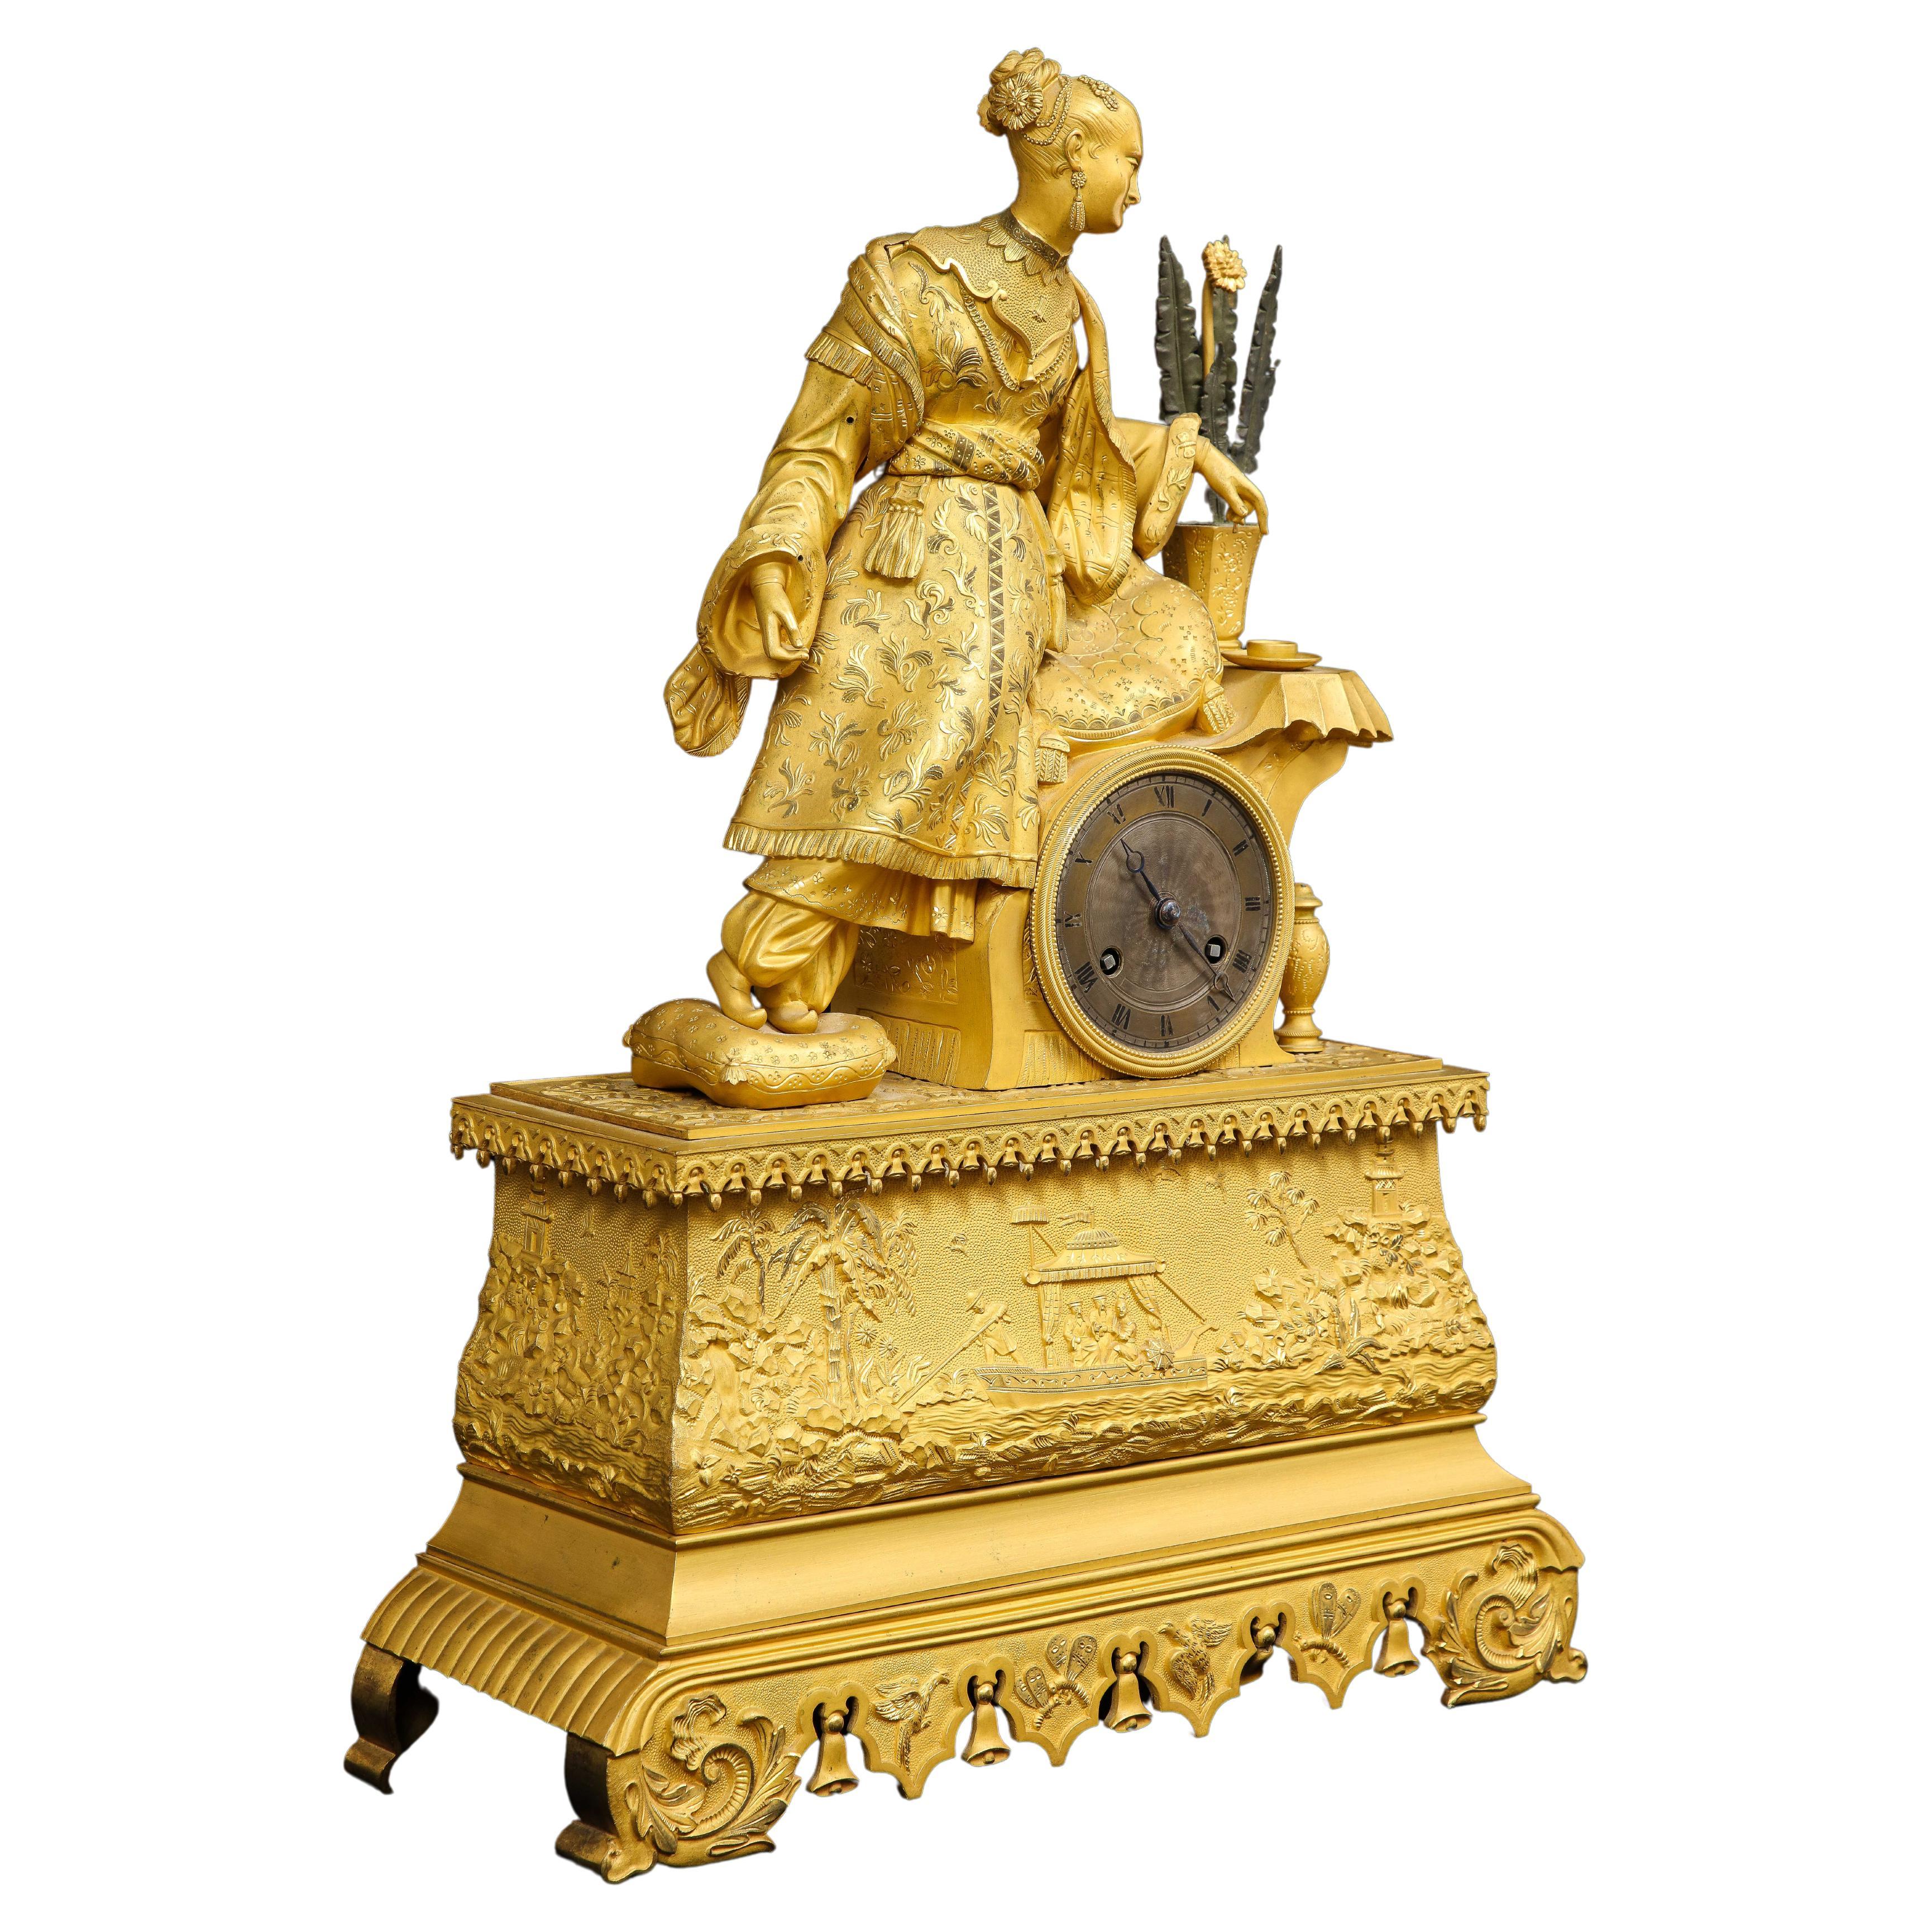 Pendule figurative en bronze doré du XIXe siècle, de style chinois, représentant une femme assise sur un siège. Il s'agit d'un bel exemple de l'artisanat français du bronze doré mélangé au style Chinoiserie. La pendule est merveilleuse avec une